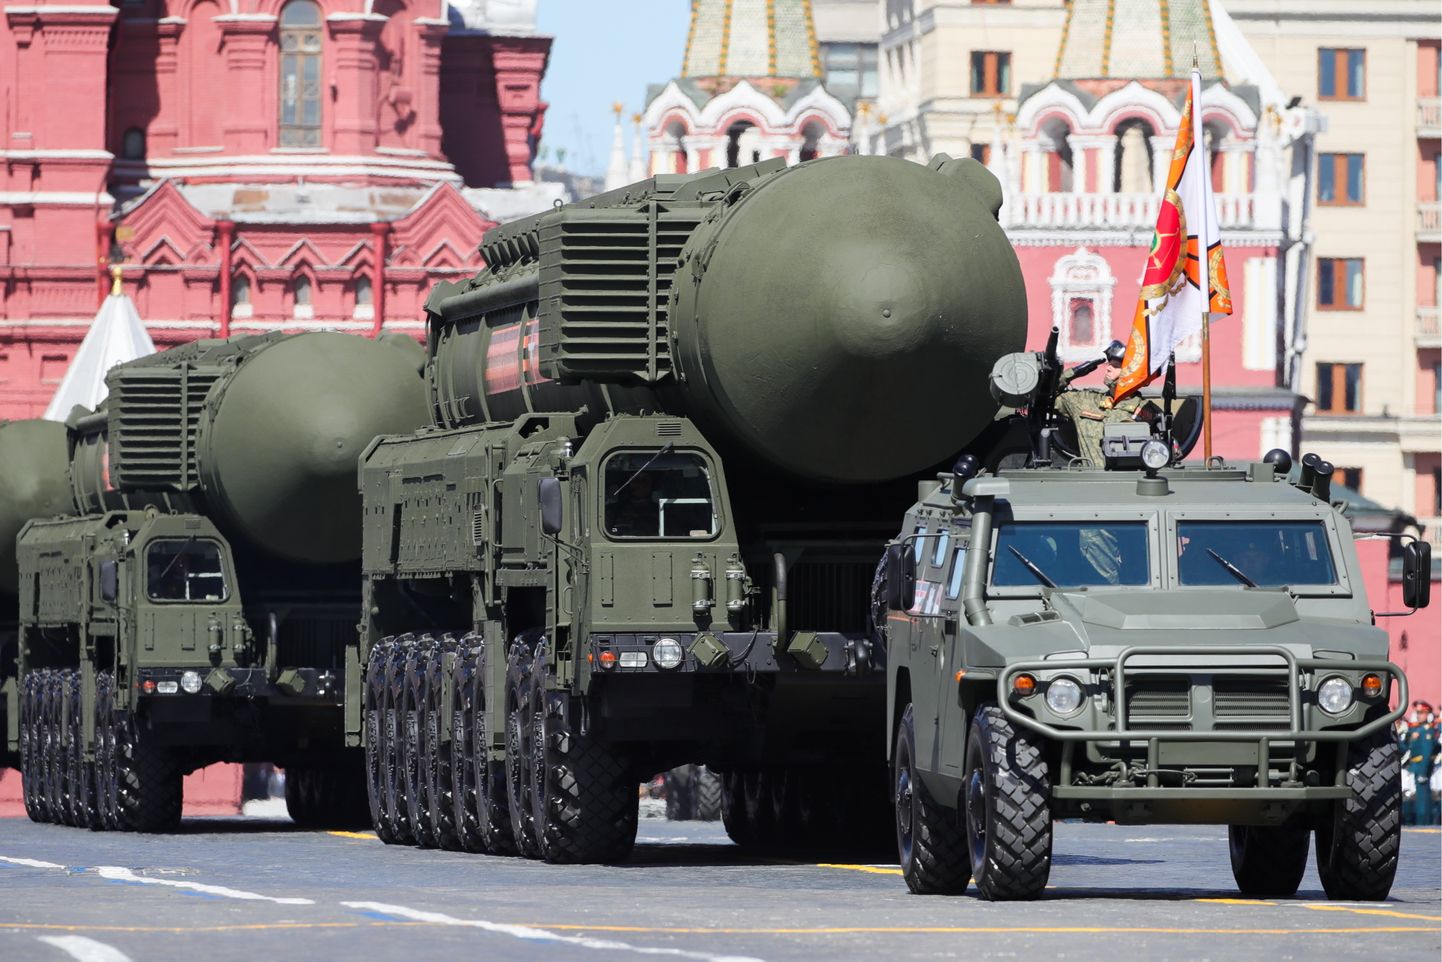 Venemaal on võrdne jõud USAga üksnes tuumavõimekuses, muus osas pole tal ressursse võidurelvastumises osaleda. Pildil: mandritevaheline tuumarakett RS-24 Jars.